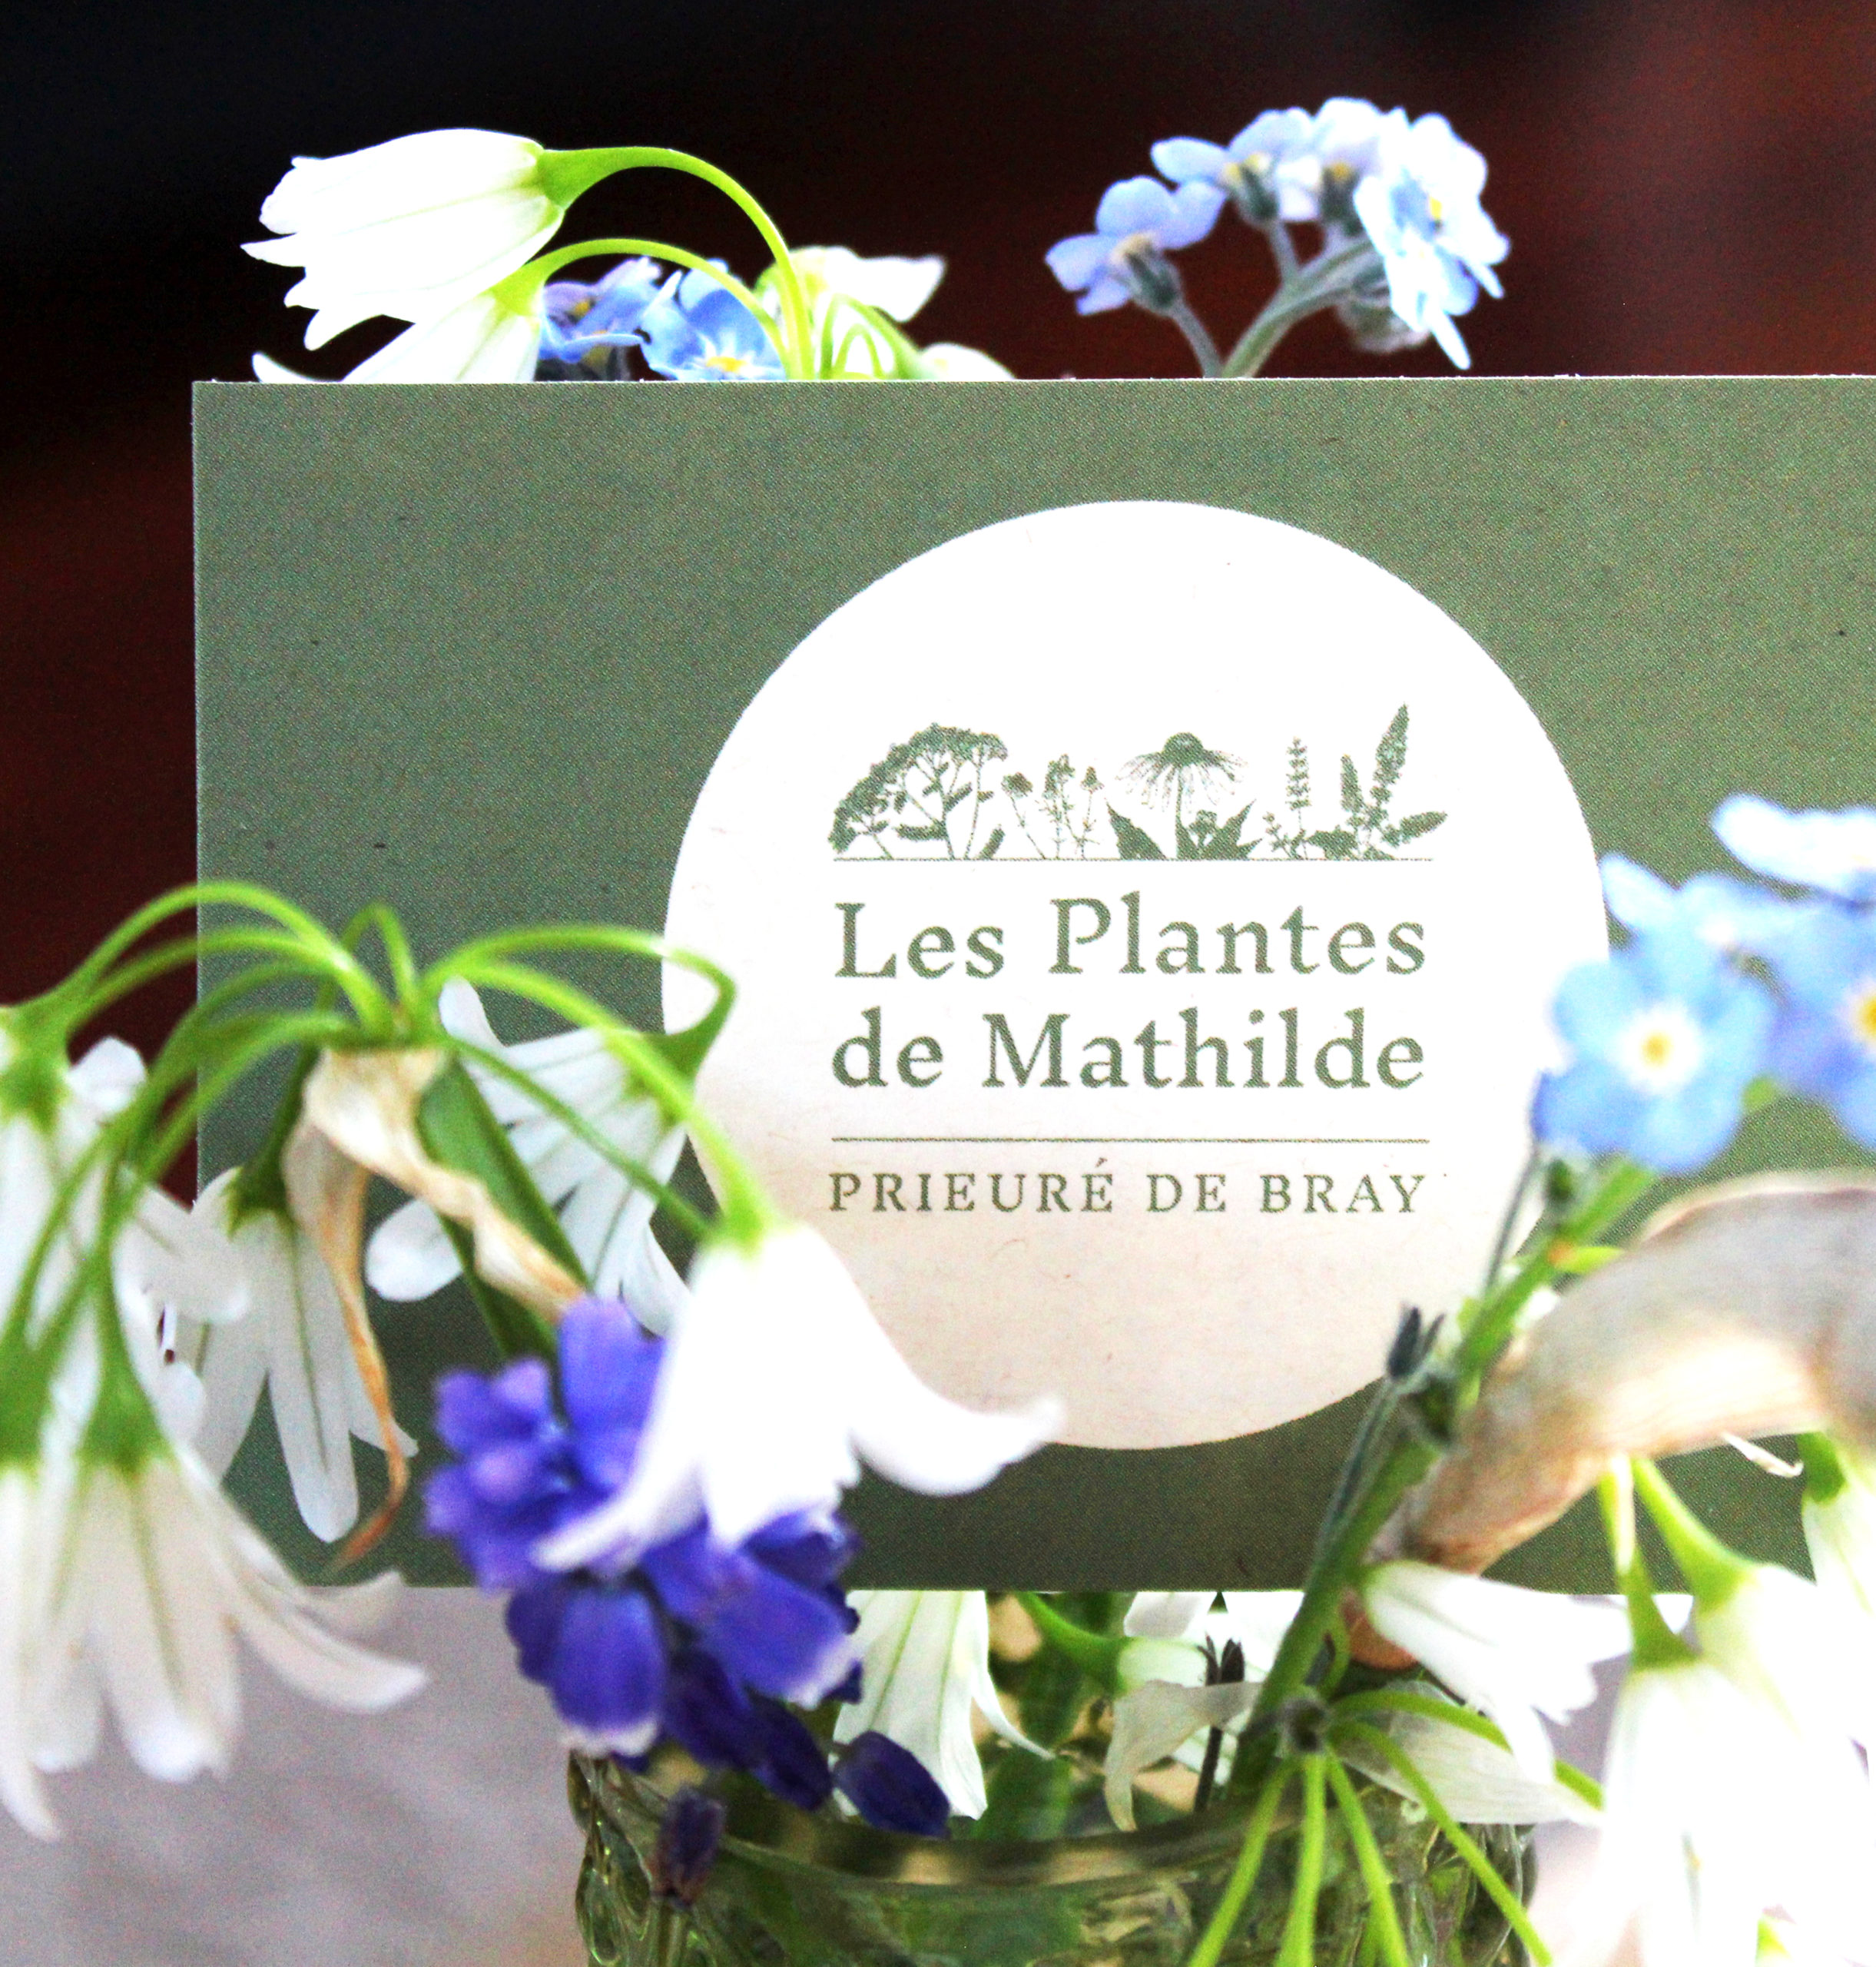 Logo et carte de visite des Plantes de Mathilde créés par Atelier Bruine